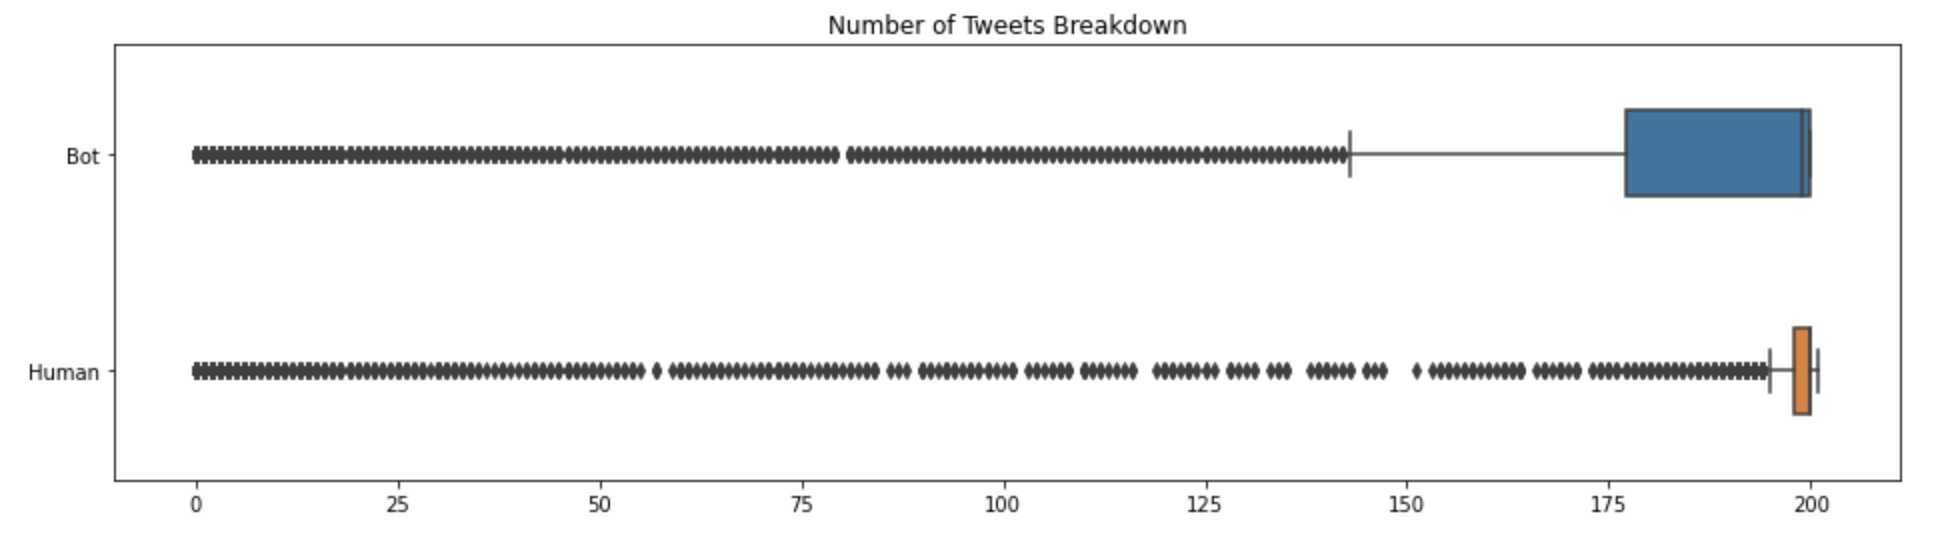 Number of Tweets Breakdown